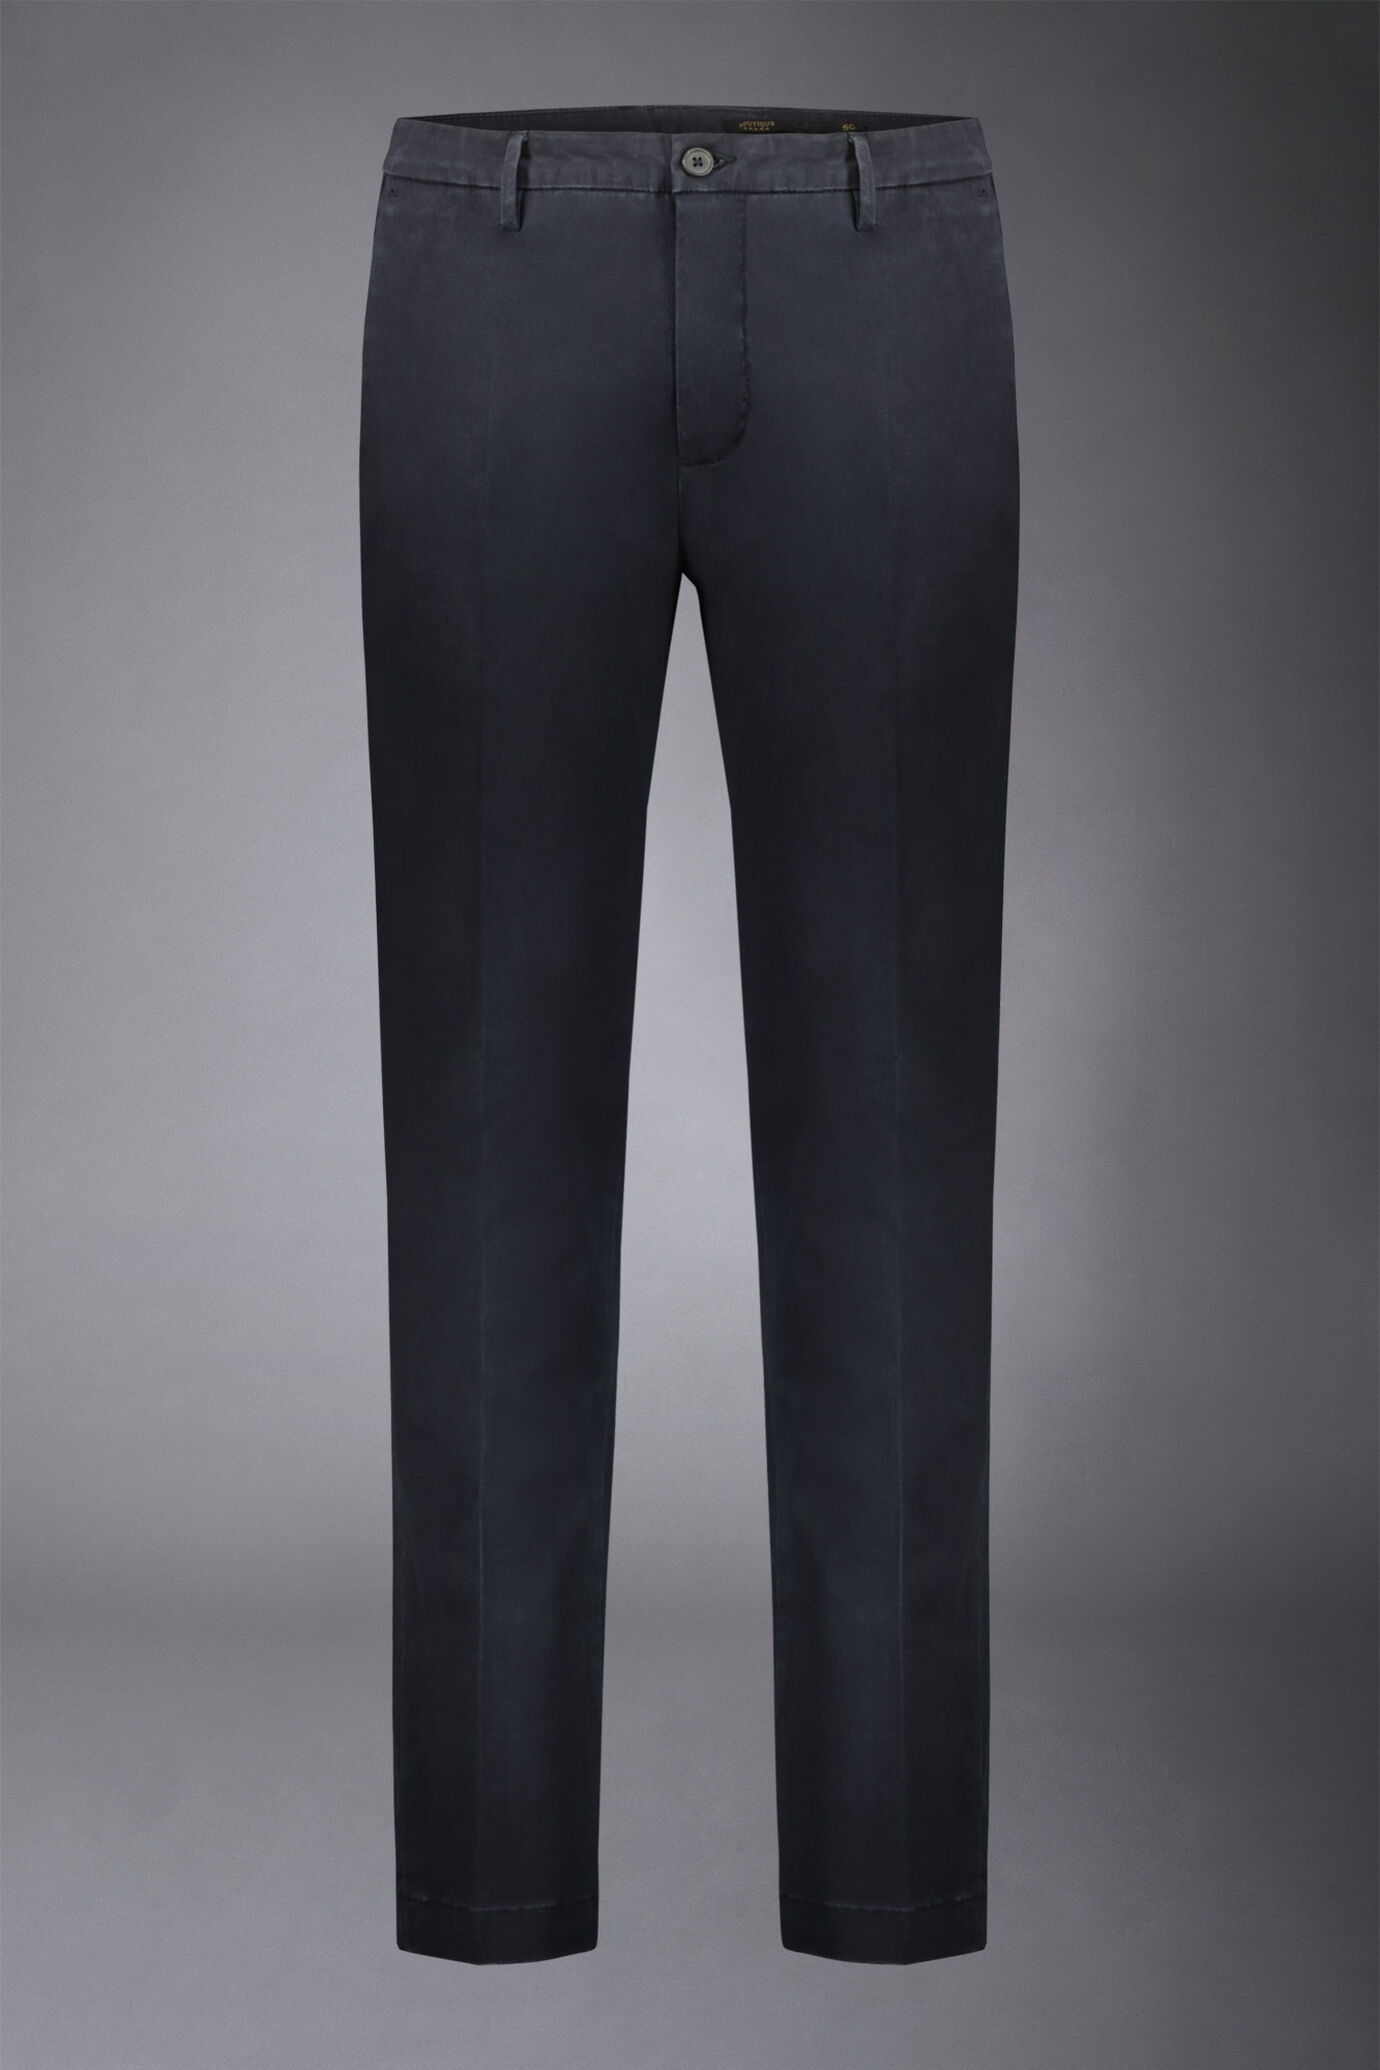 Pantalone chino uomo classico regular fit tessuto twill elasticizzato